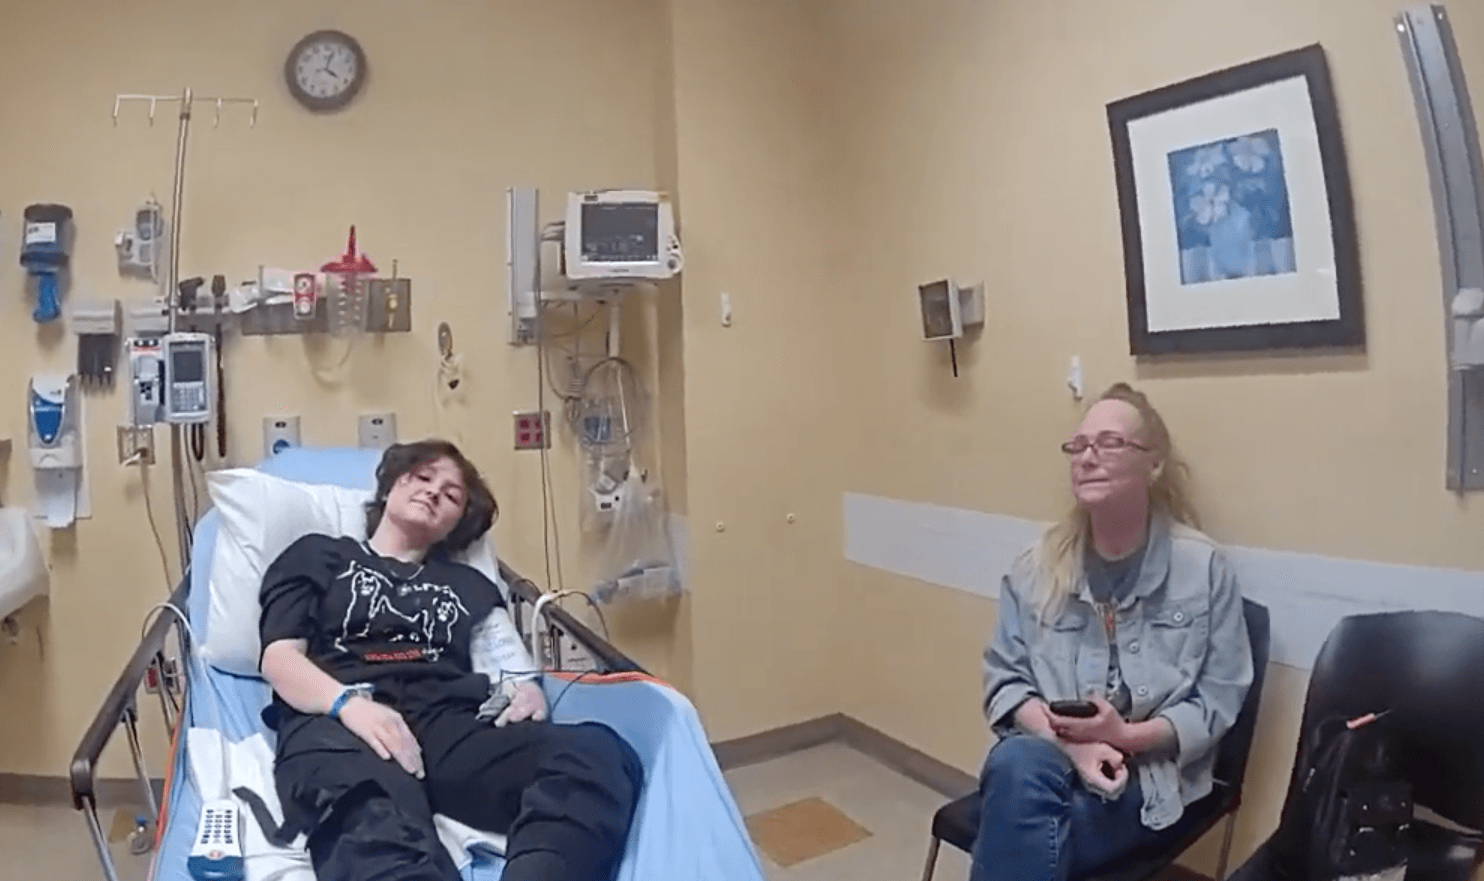 Nex Benedict e sua nonna Sue in ospedale poche ore prima che Benedict spirerà in conseguenza delle percosse ricevute.